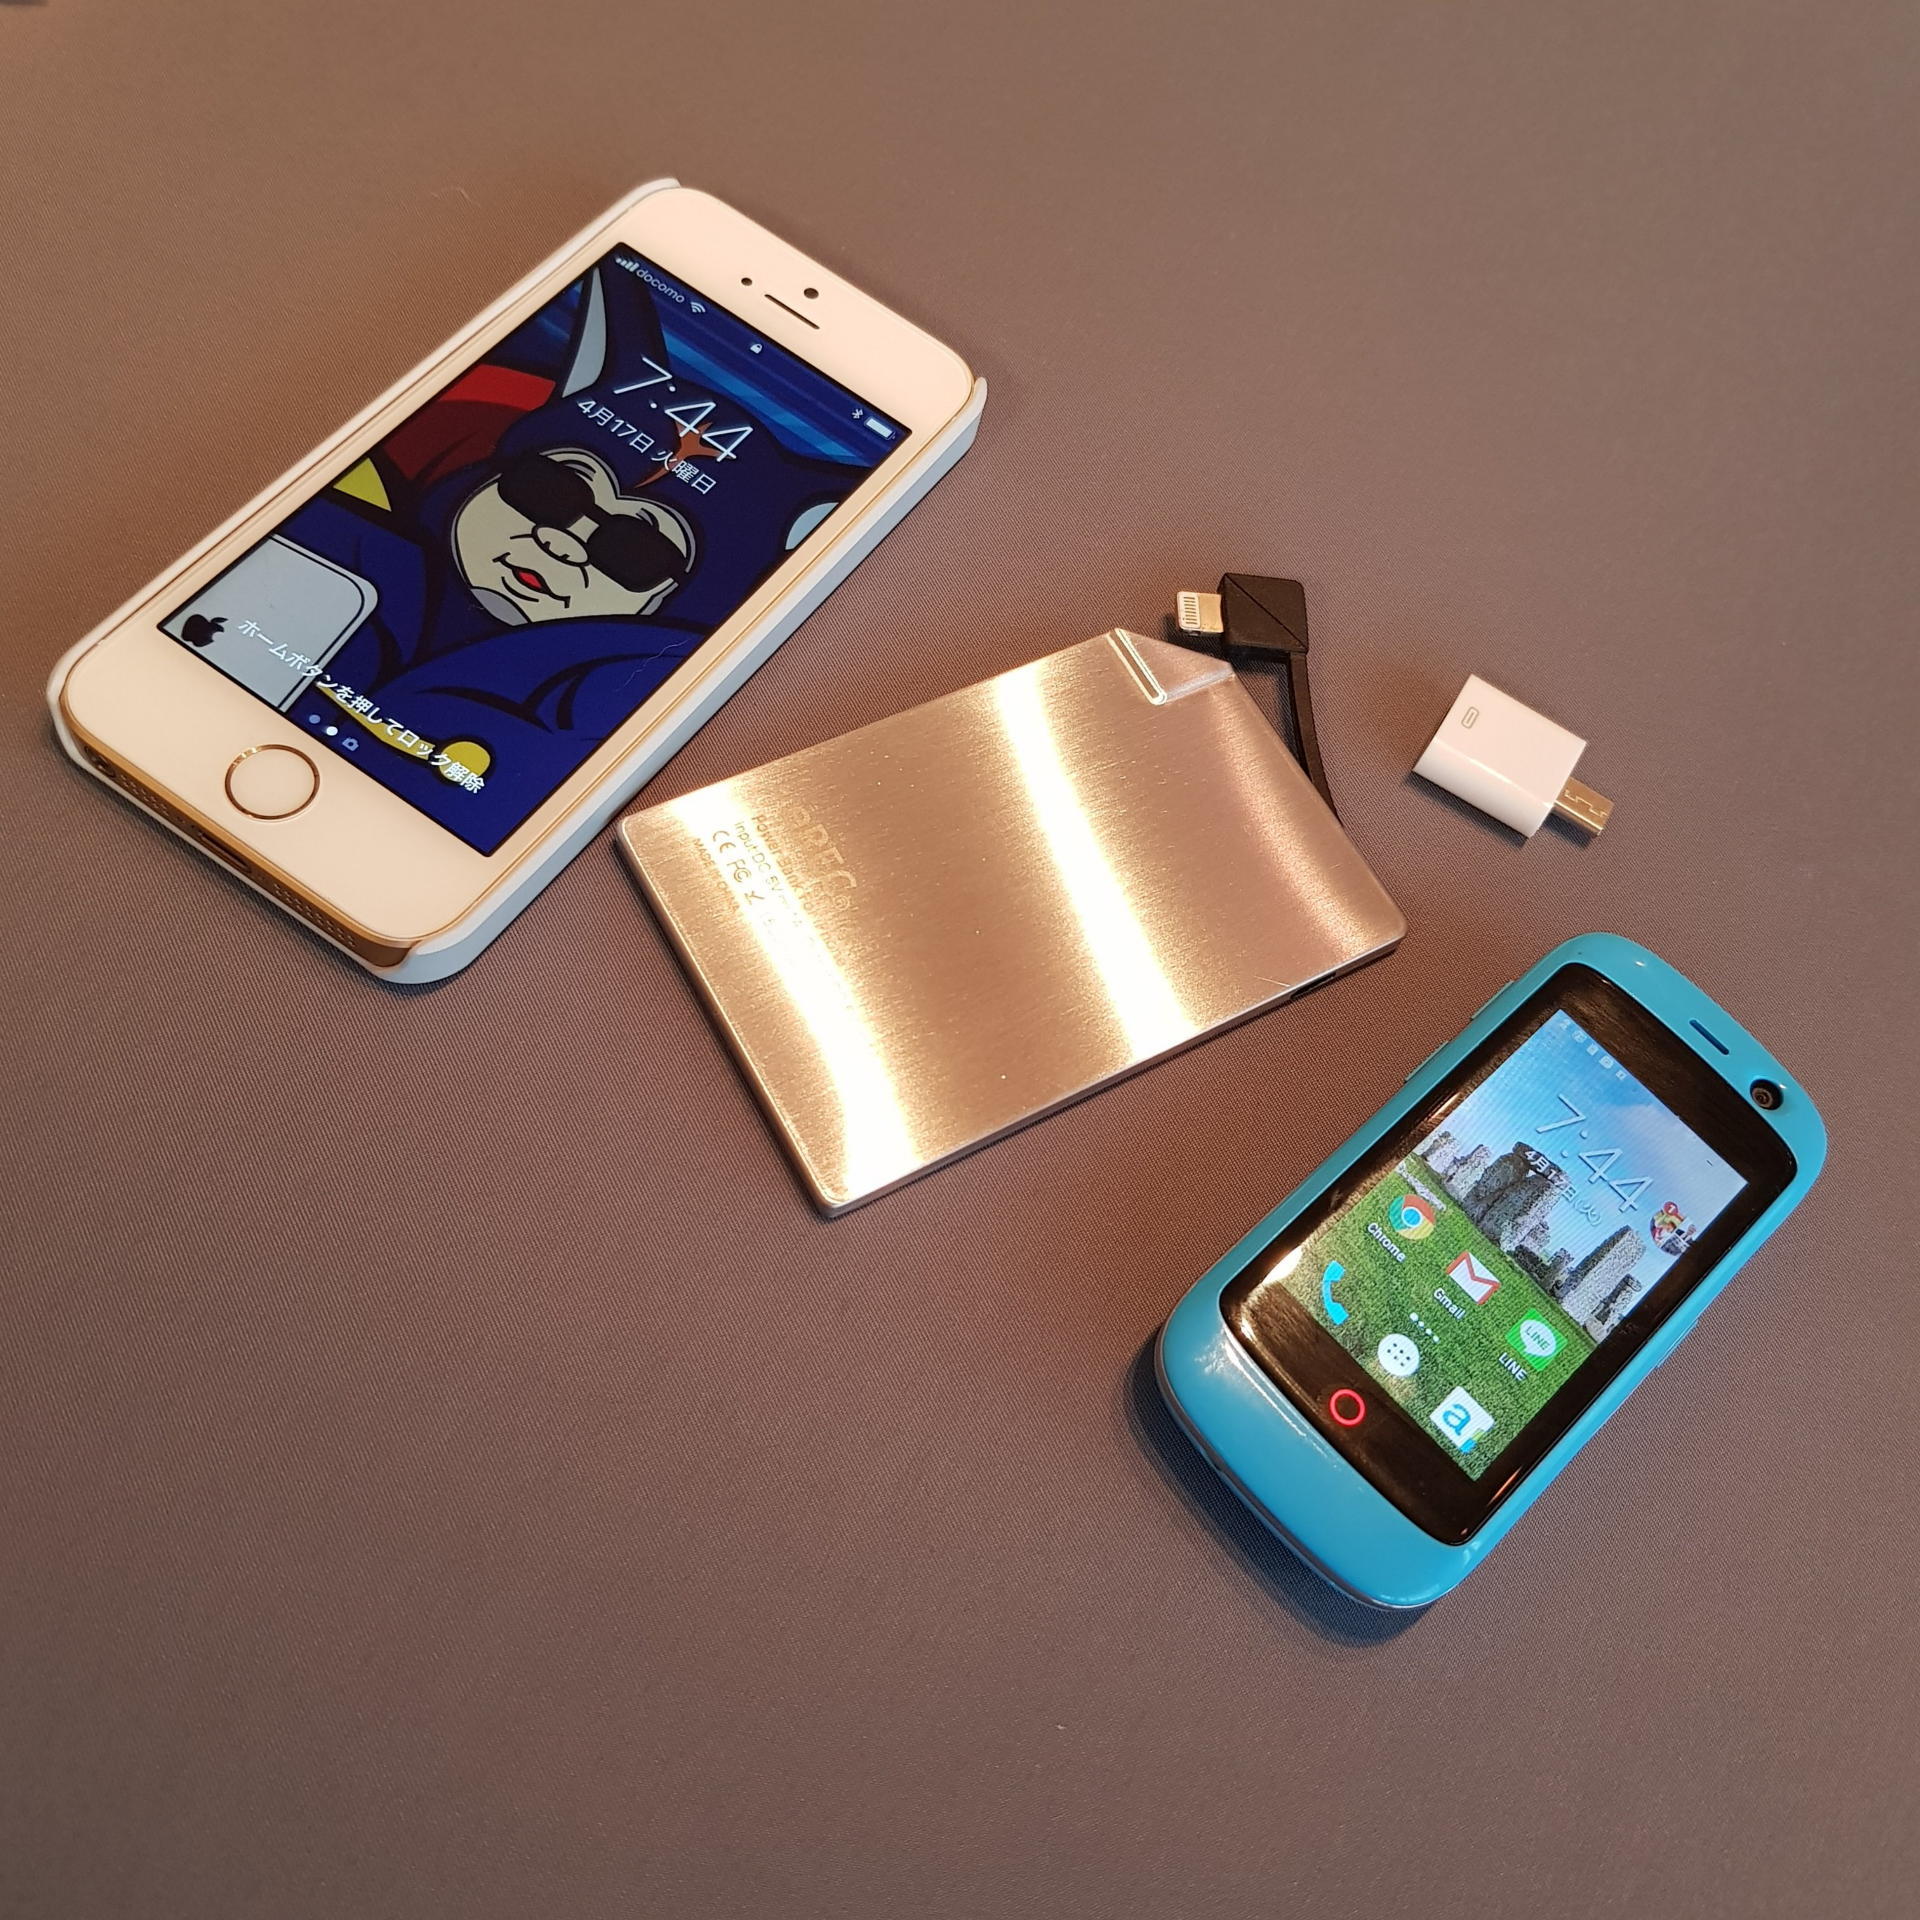 次世代iPhone SEでも使いたい 激薄4mmのカード型モバイルバッテリーを衝動買い